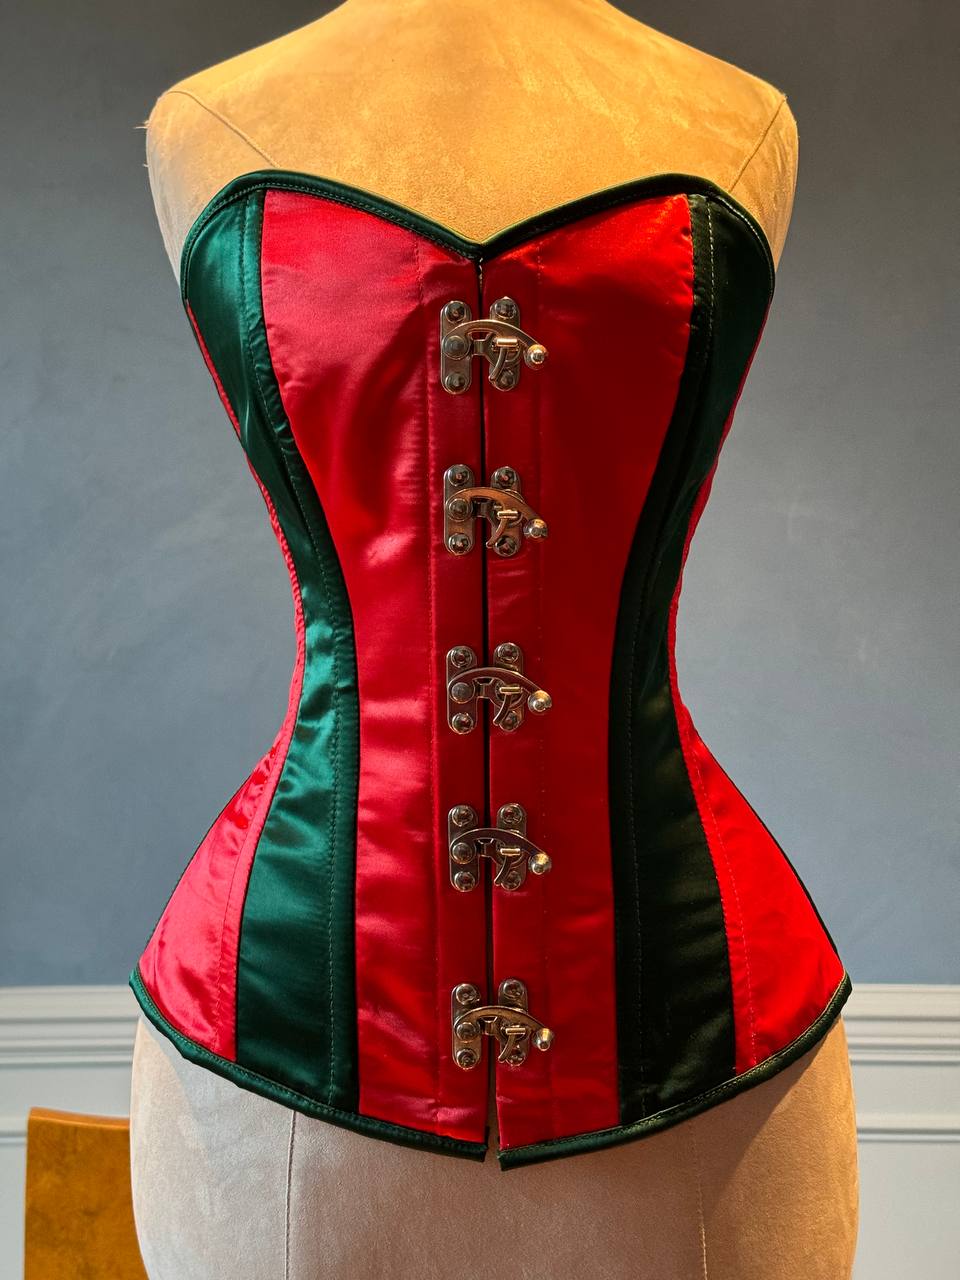 
                  
                    Corset overbust rosso e verde in stile Santa con chiusure steampunk davanti in raso. Il corsetto è realizzato personalmente secondo le tue misure.
                  
                